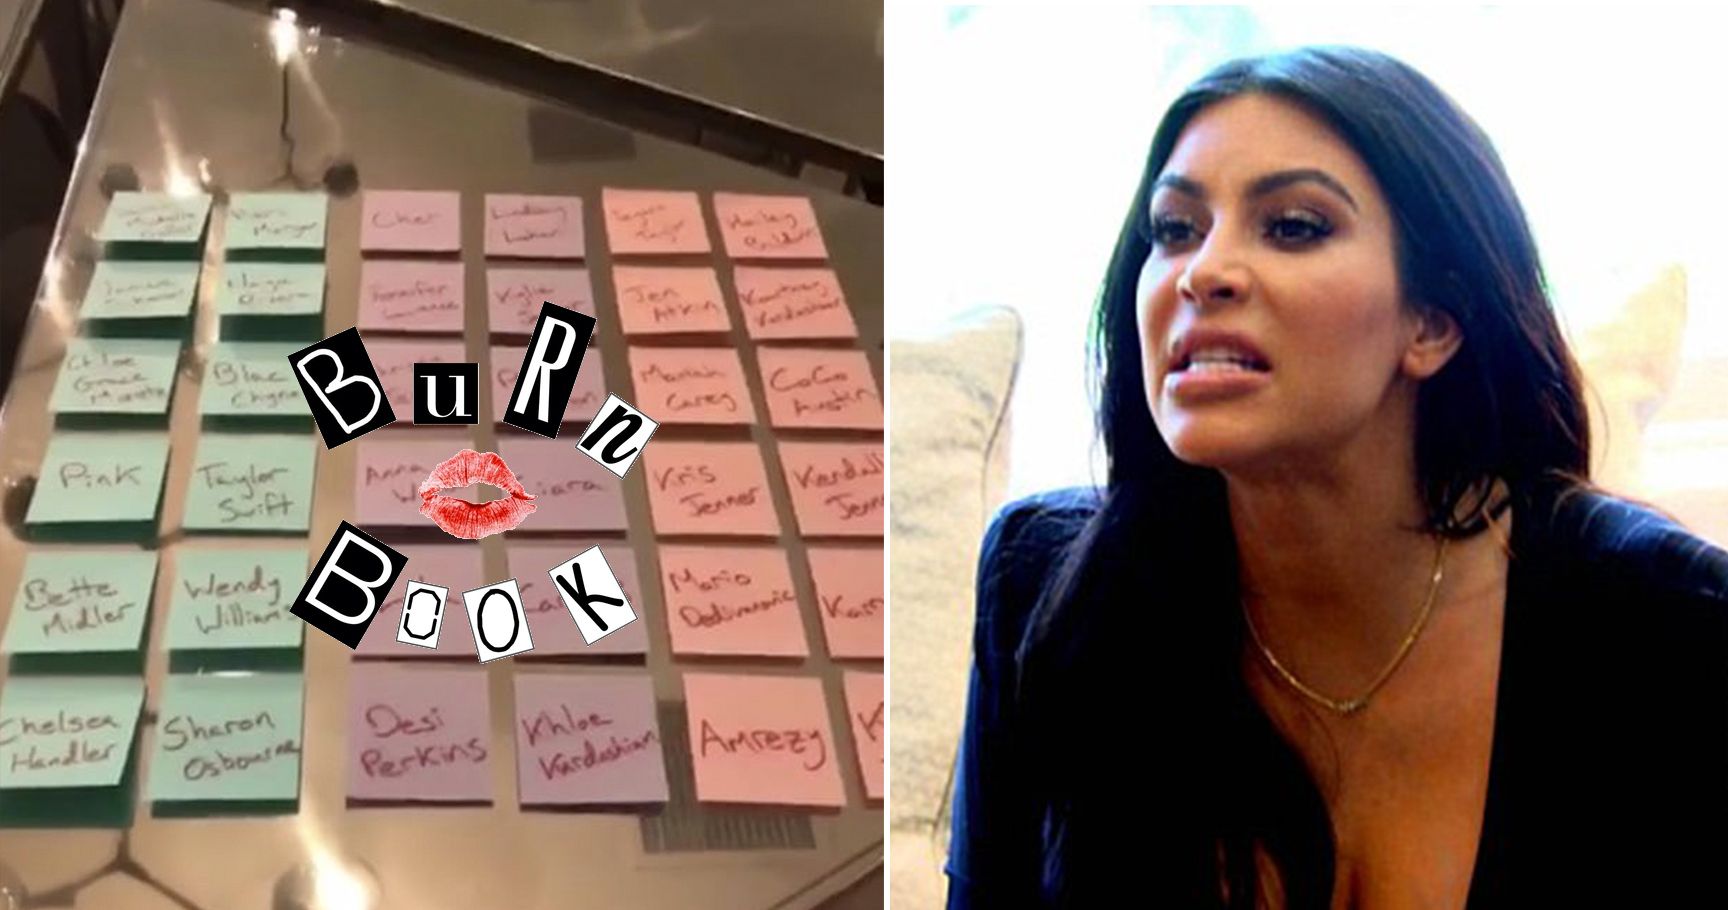 15 celebridades que chegaram ao 'Burn Book' de Kim Kardashian - e por quê